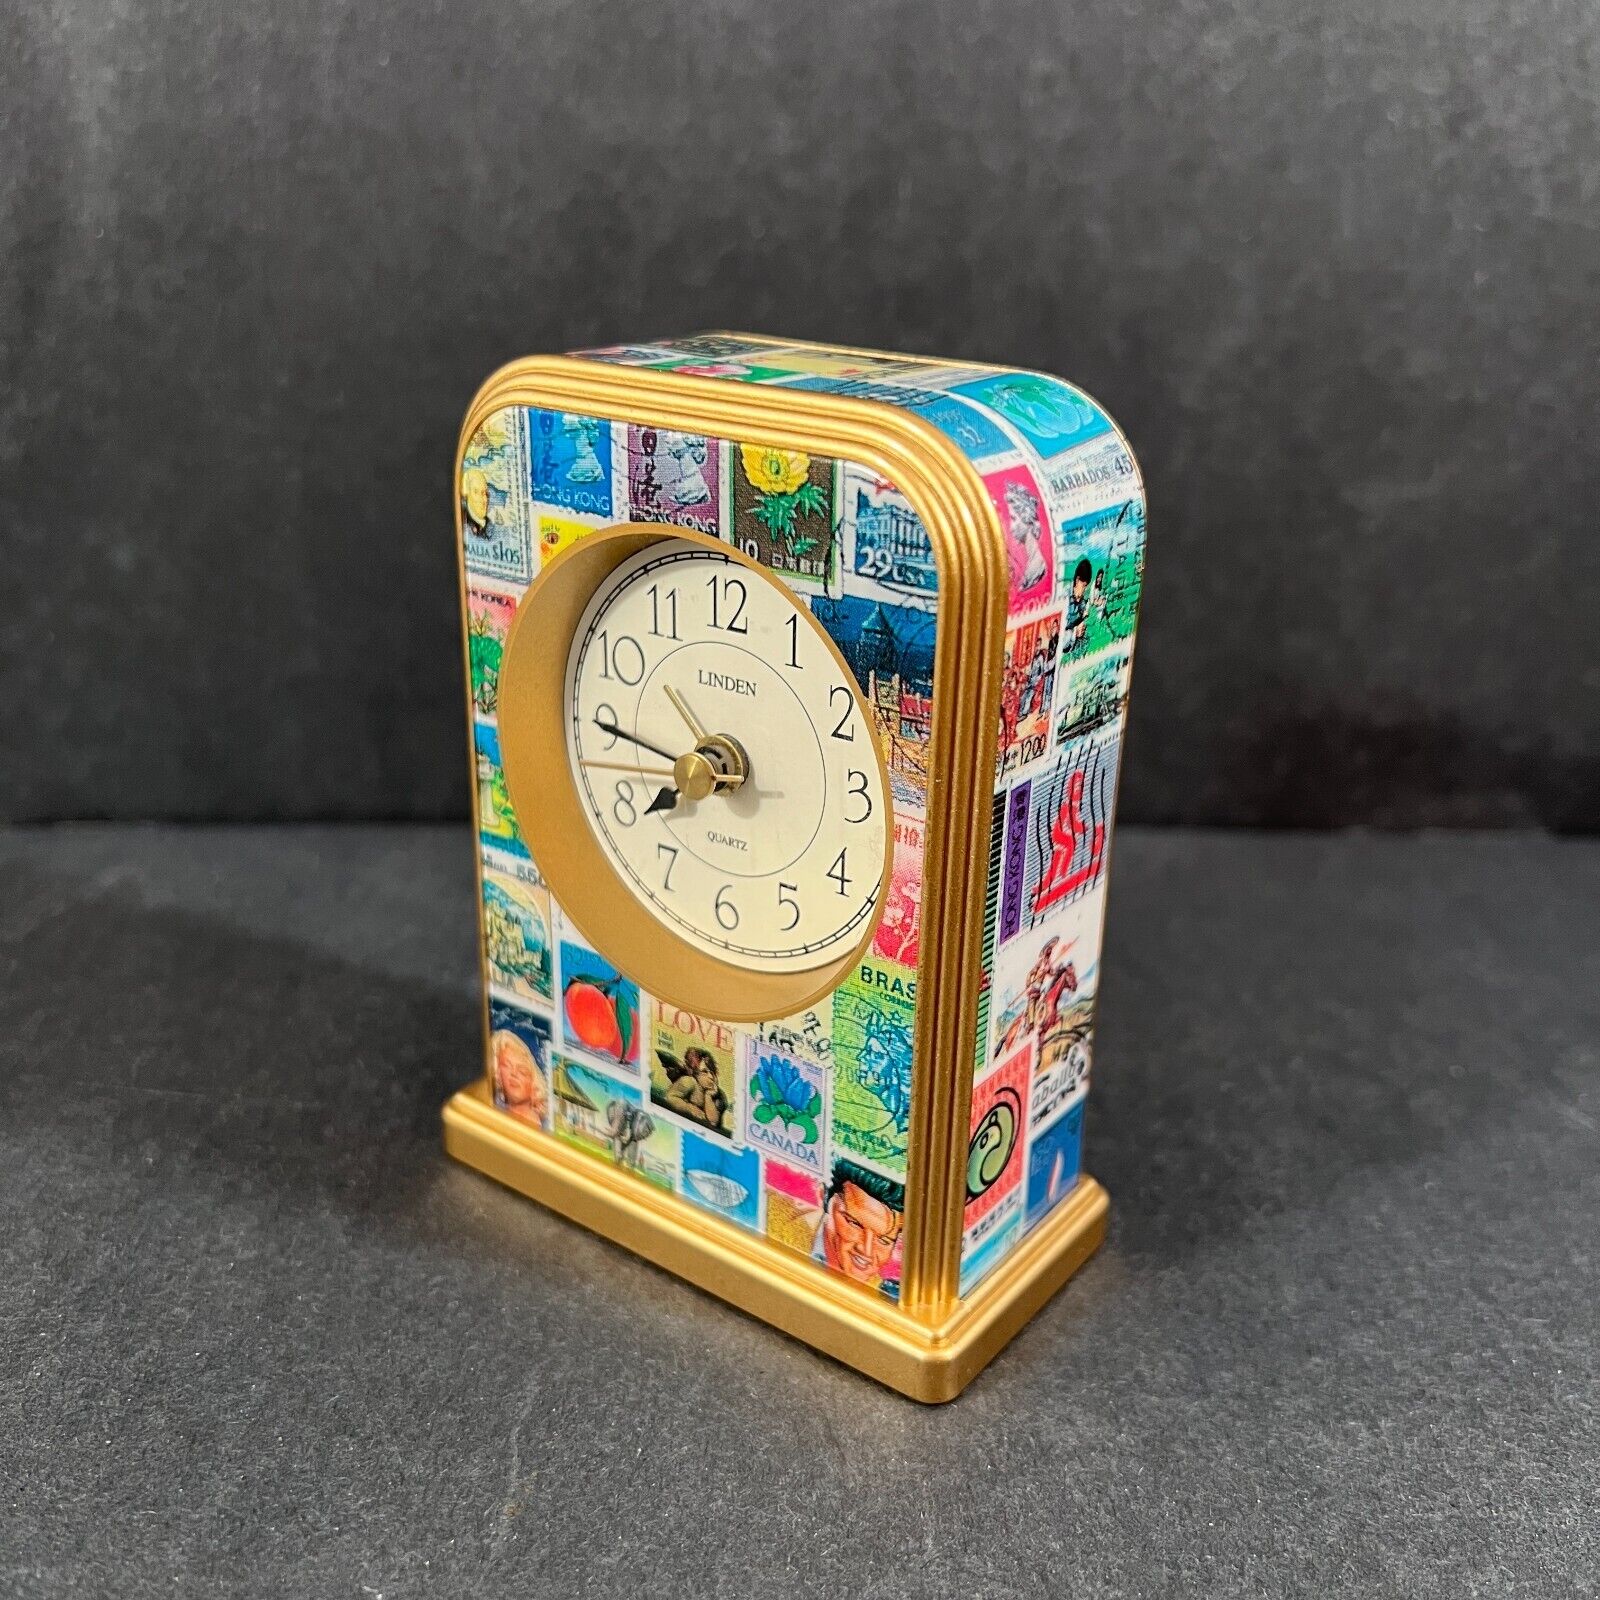 Linden Quartz Alarm Clock Postage Stamps Design 1995 Battery Second Hand Works